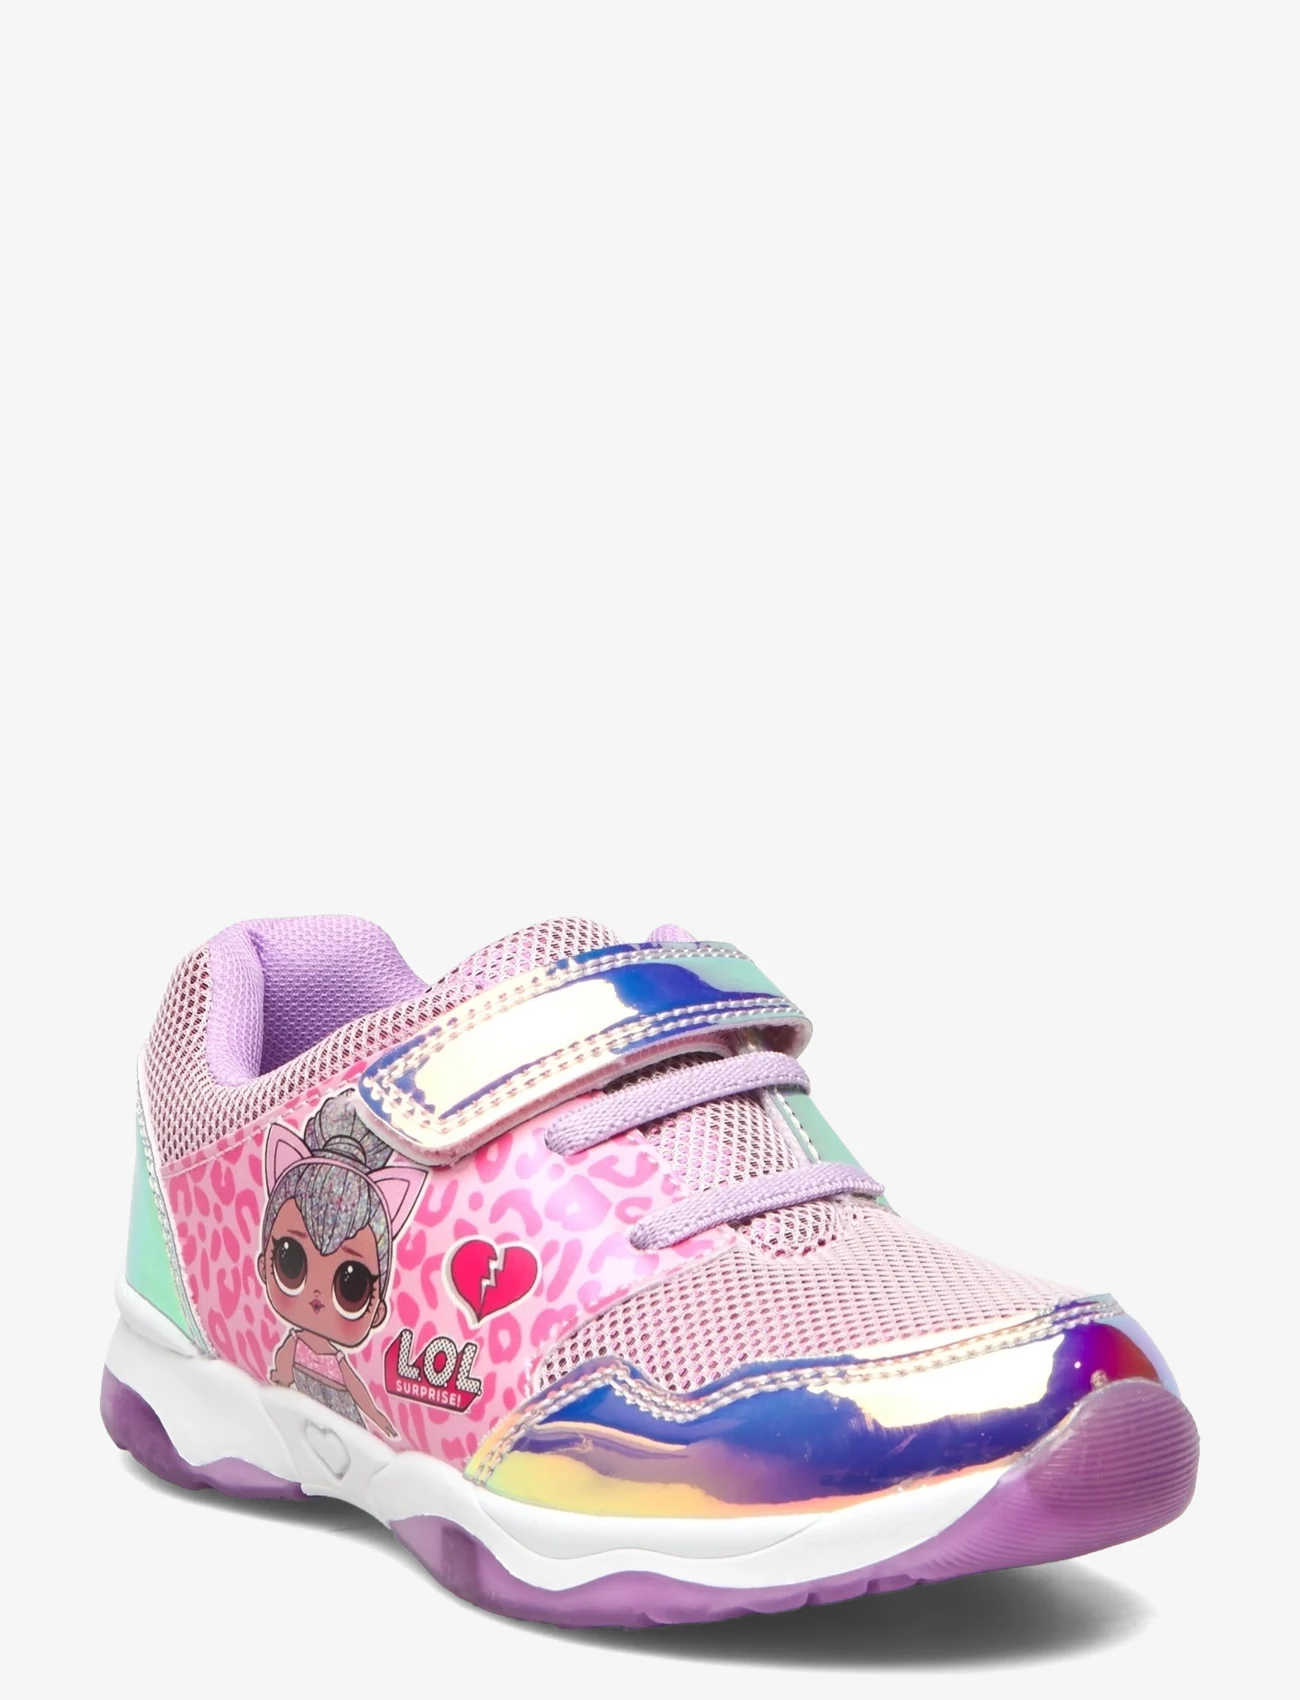 Leomil - Girls sneakers - vasaras piedāvājumi - pink/lilac - 0